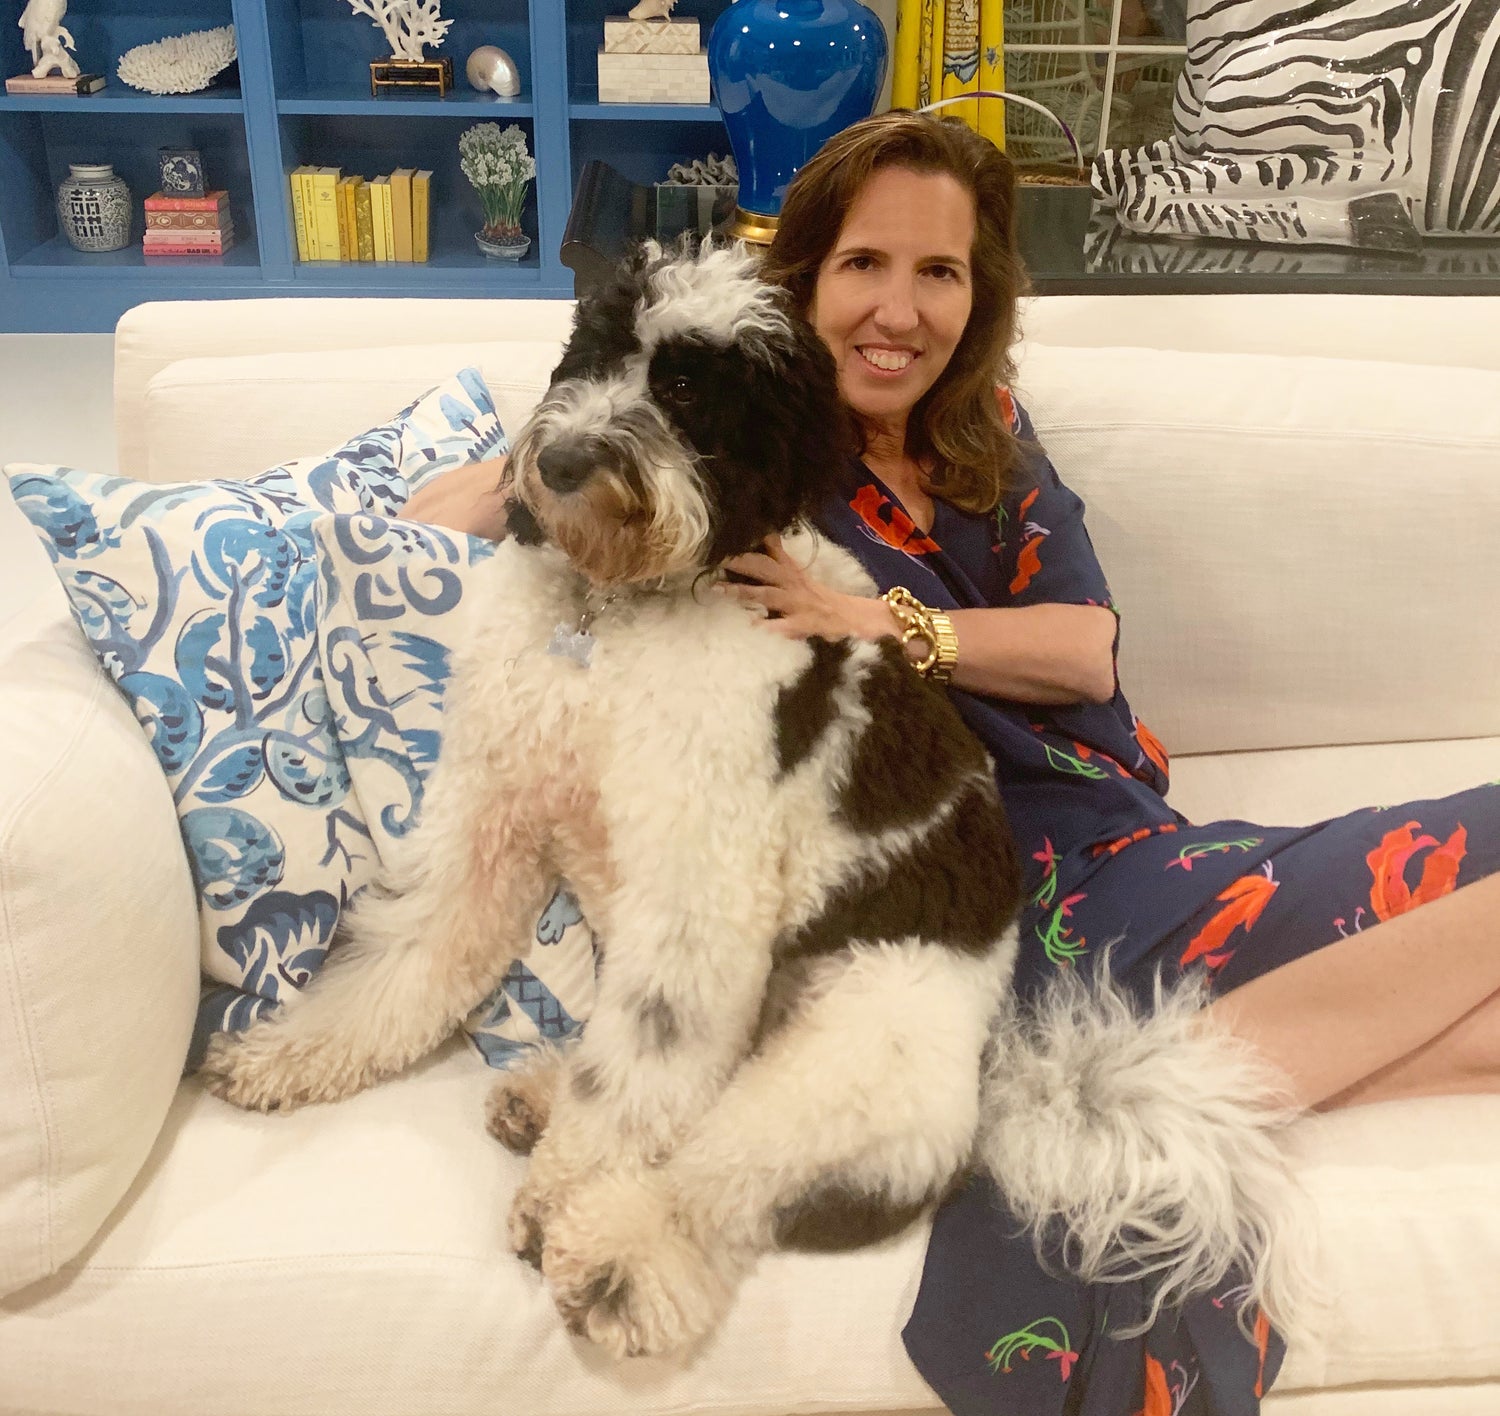 Liz Lange on her BYD (bring your dog) summer party tips.